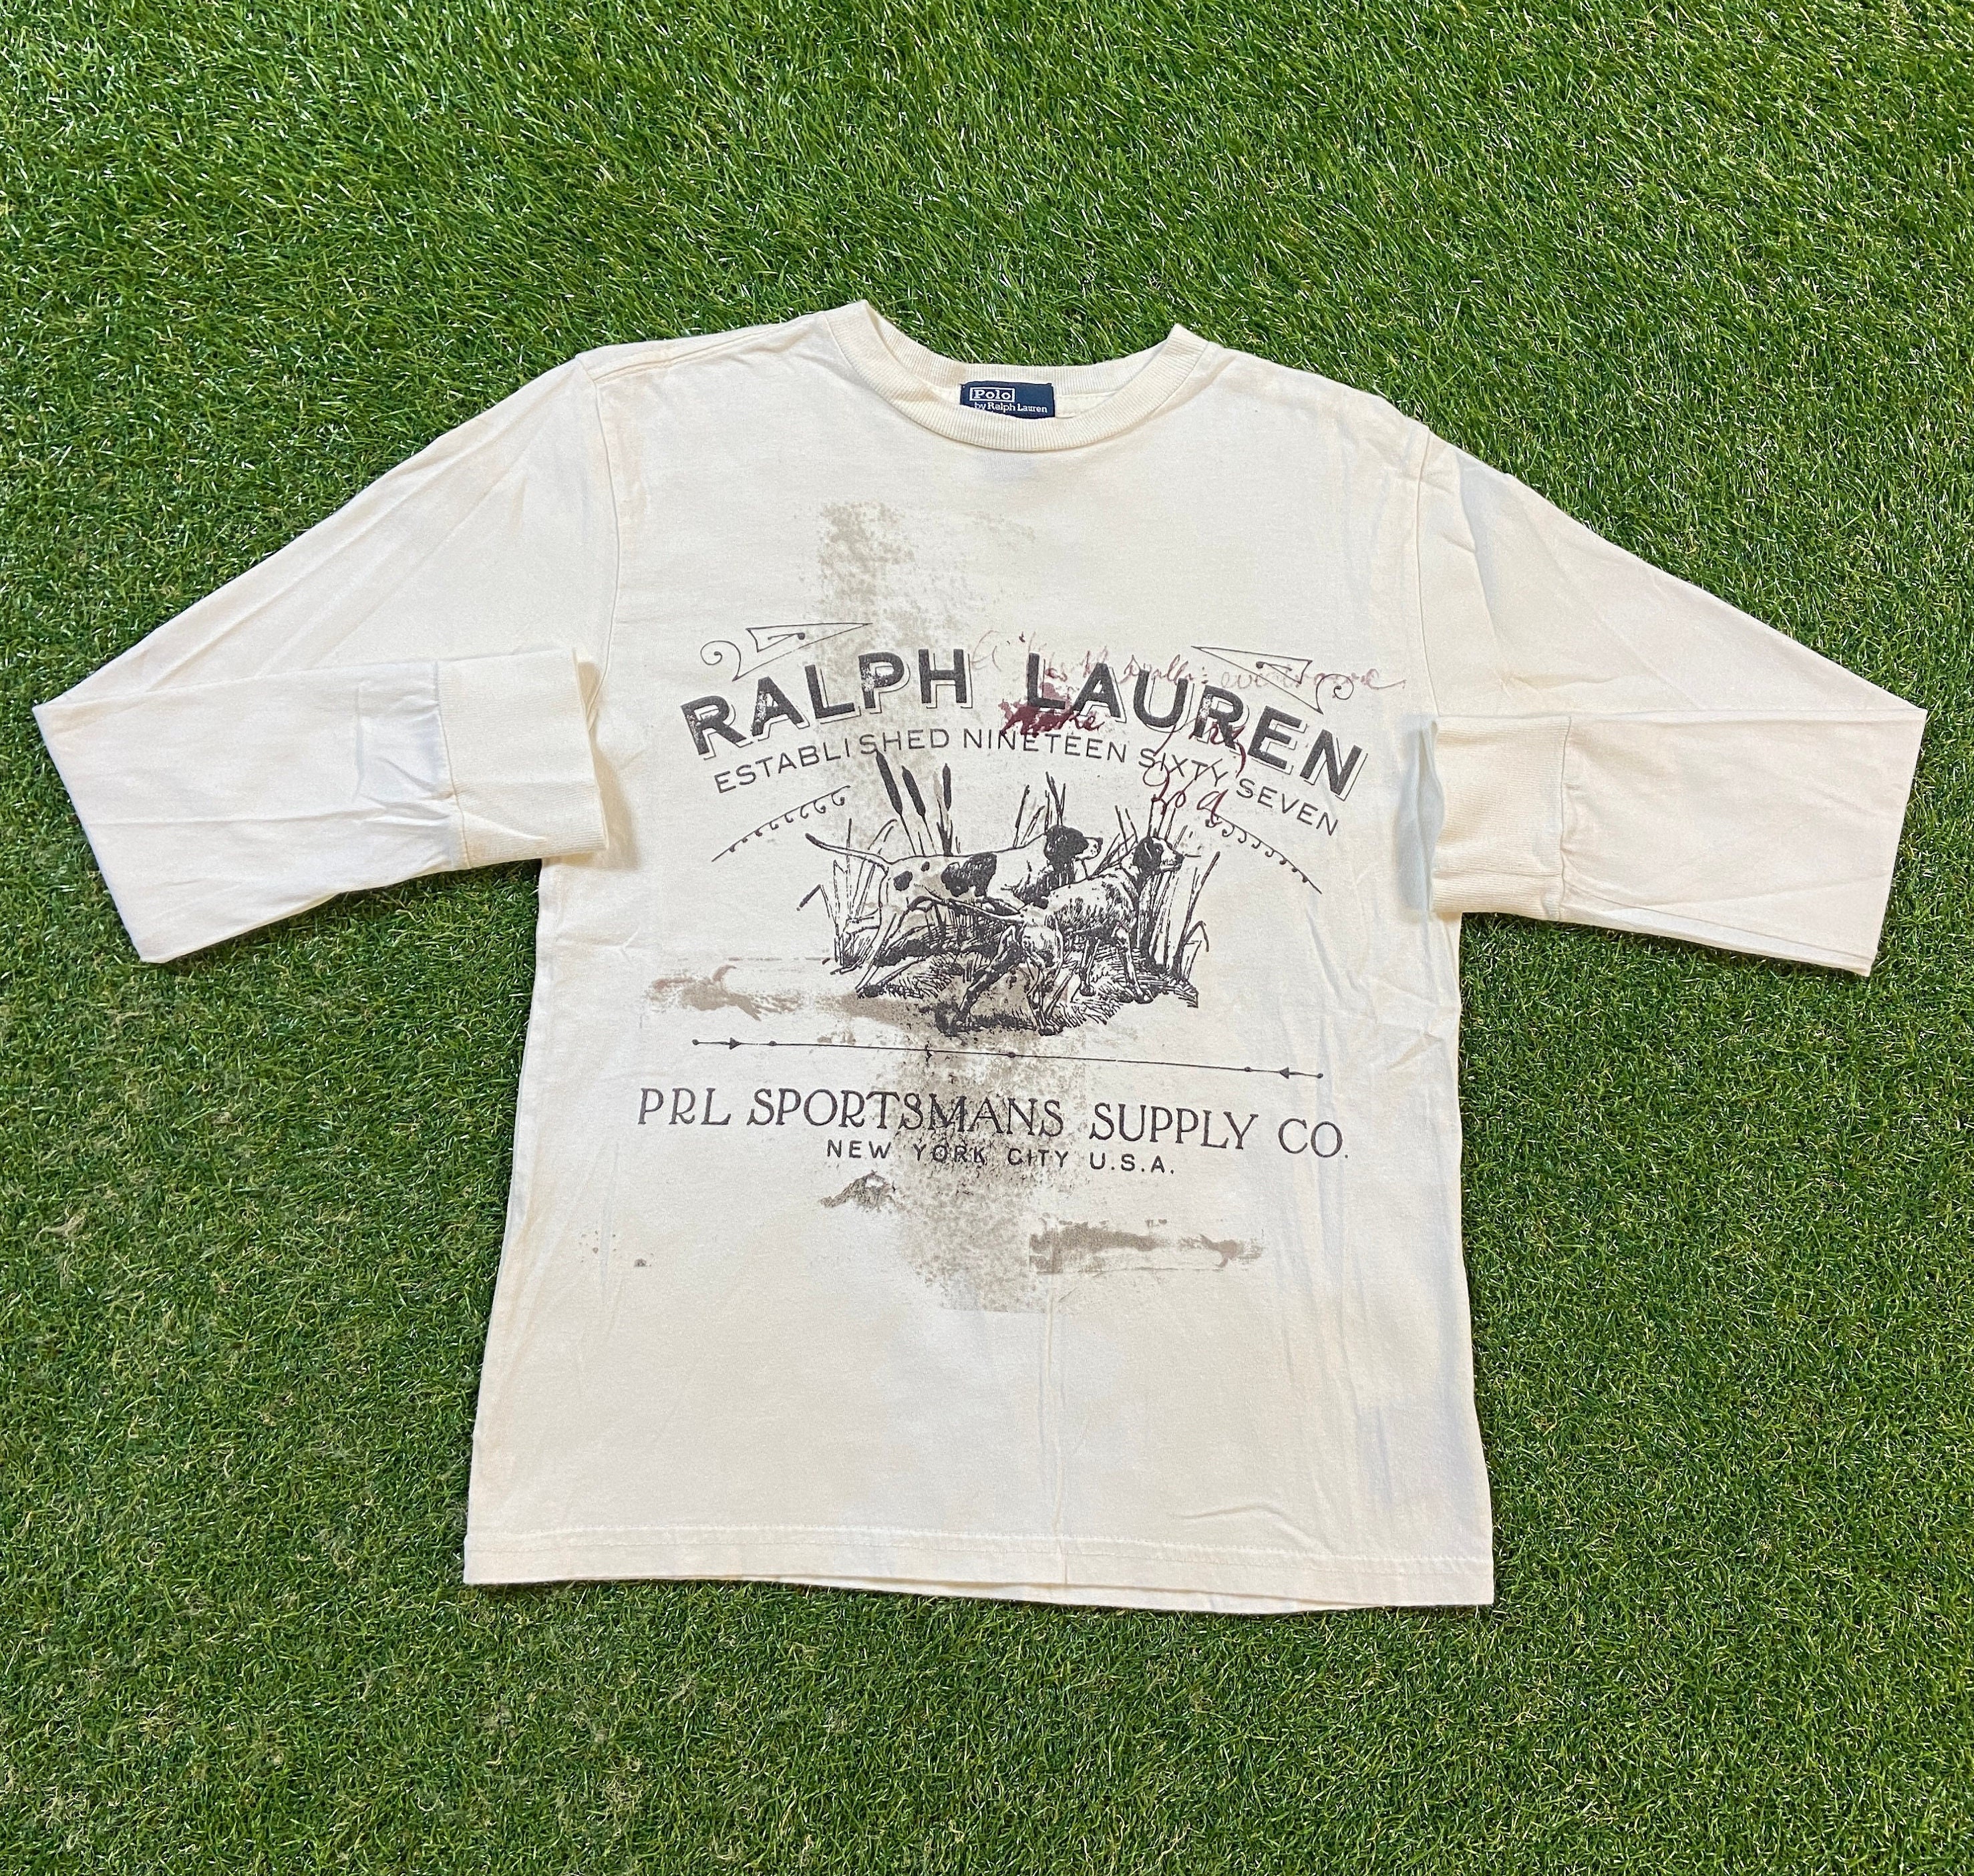 Polo Ralph Lauren logo t-shirt in desert rose